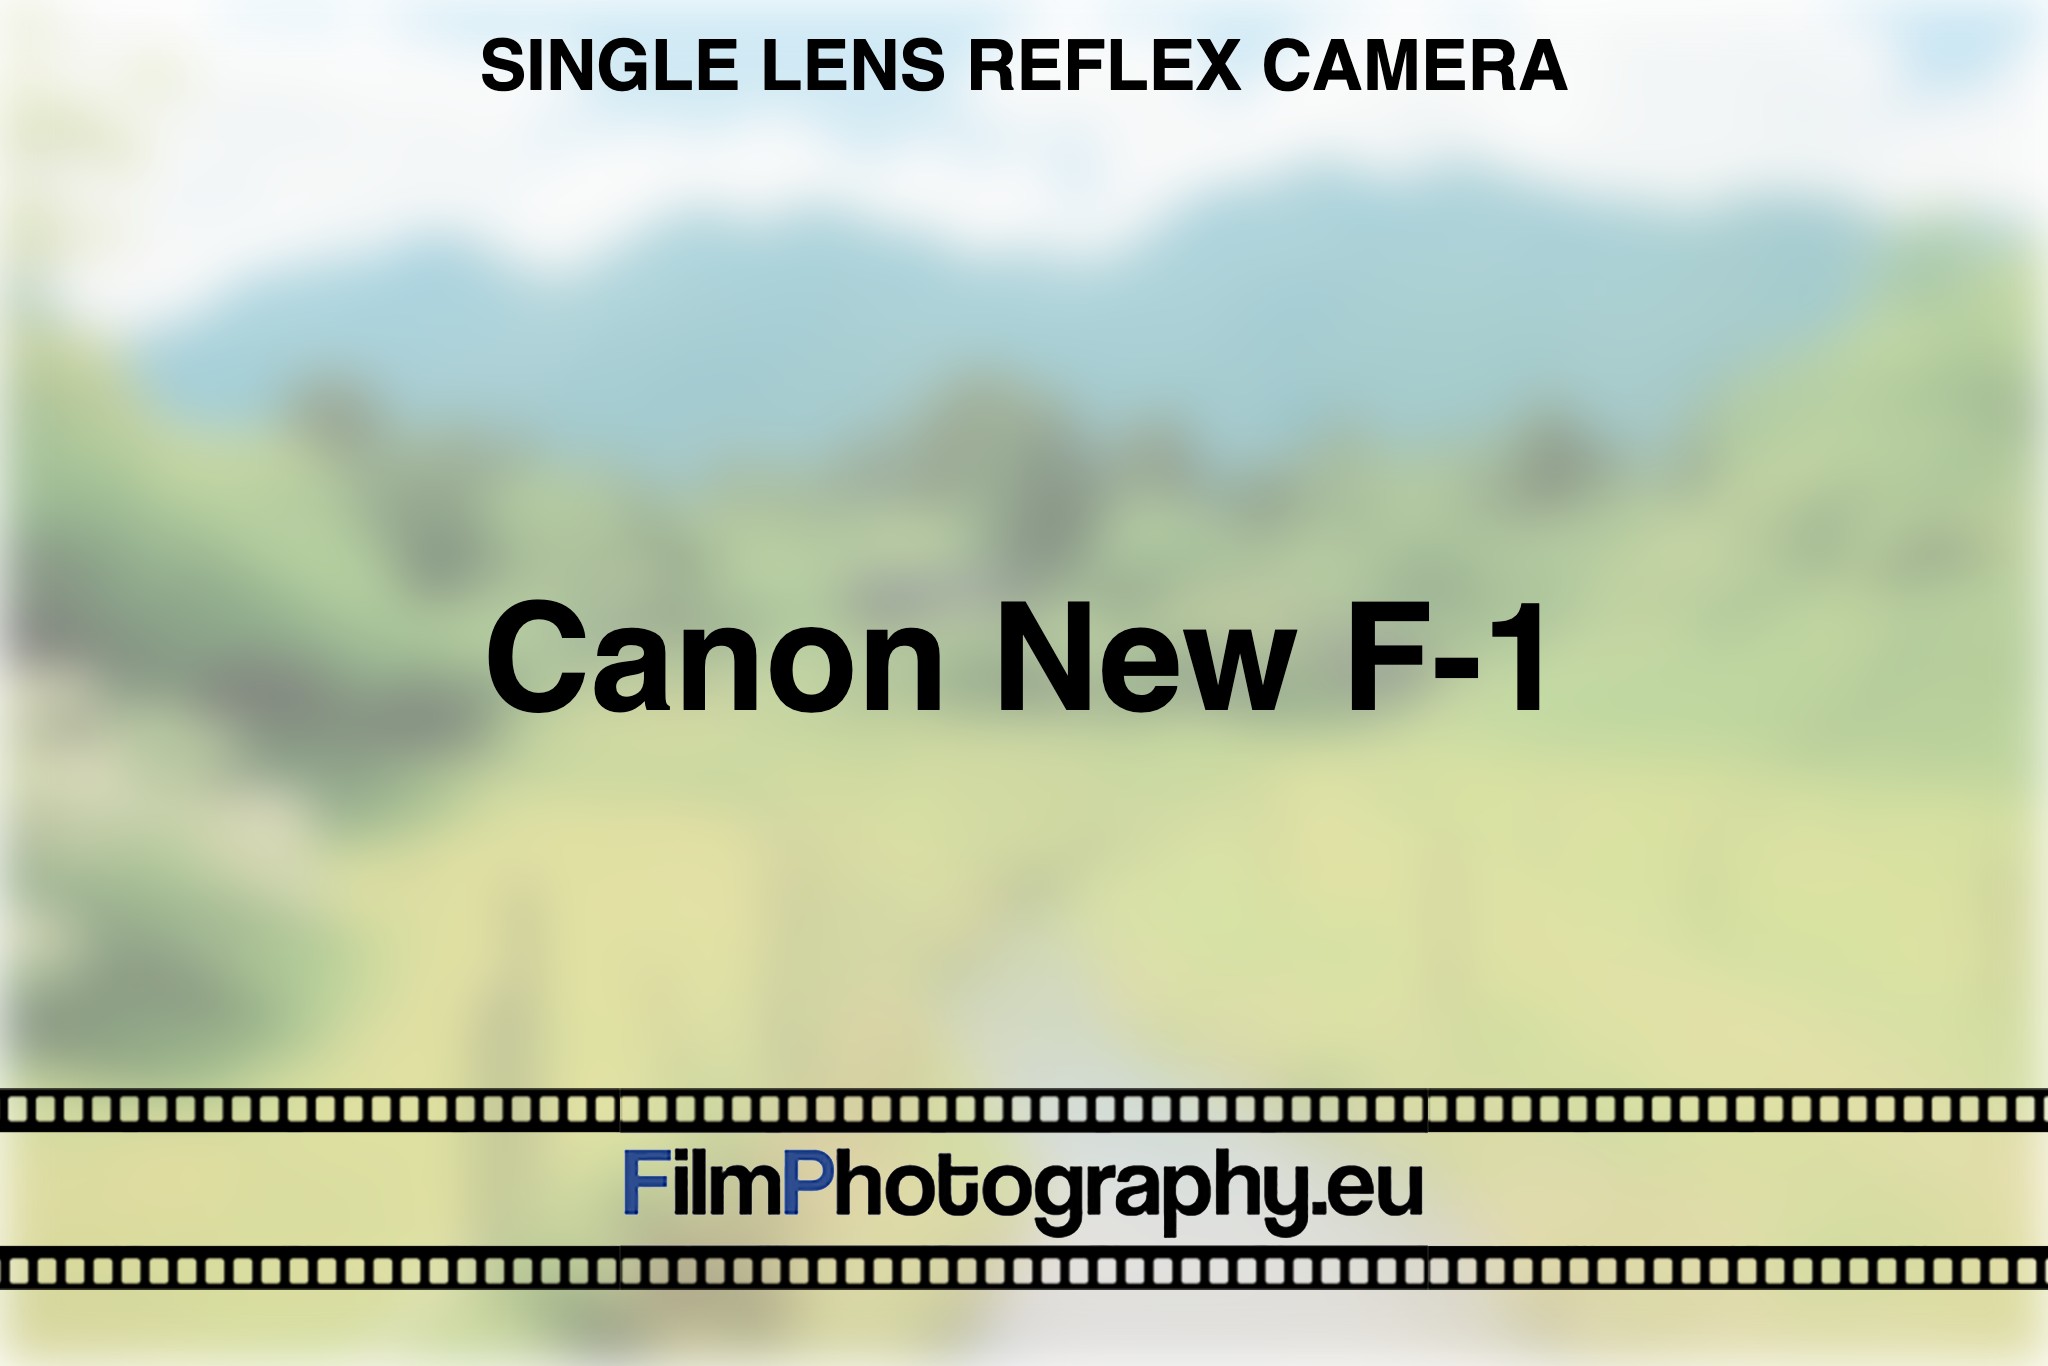 canon-new-f-1-single-lens-reflex-camera-bnv